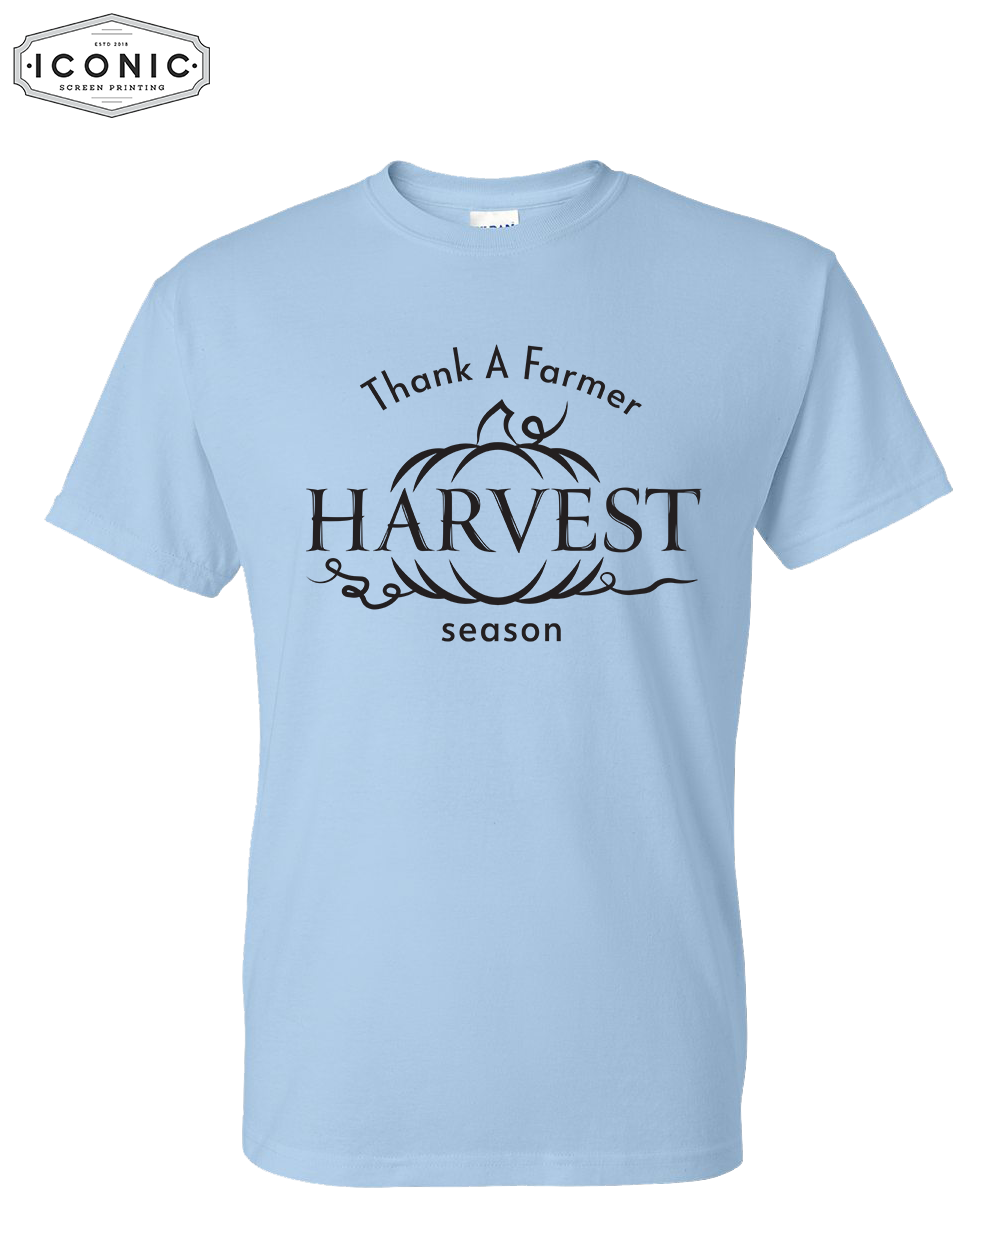 Thank a Farmer - DryBlend T-shirt